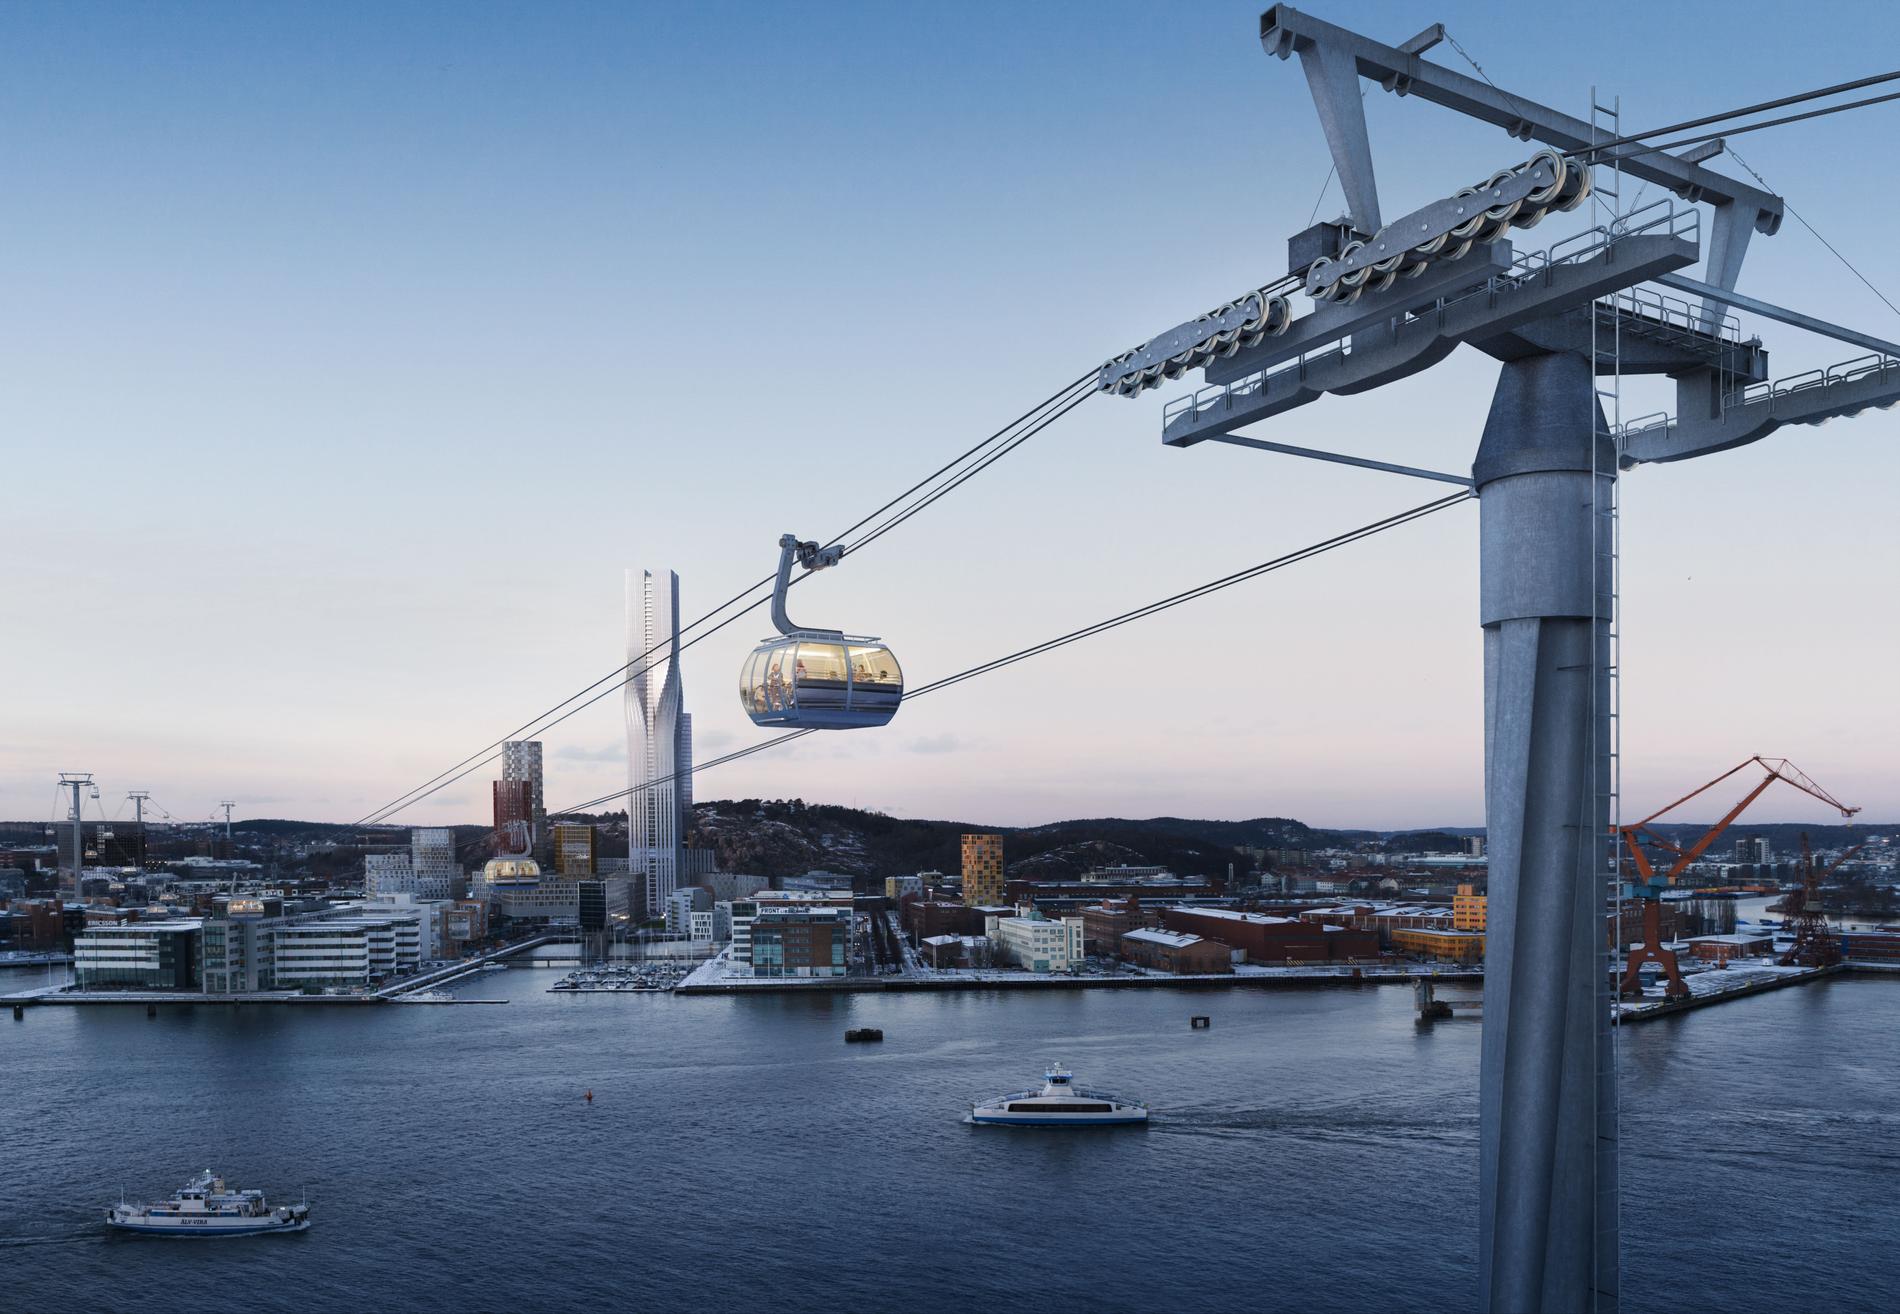 Beslutet om en linbana i Göteborg hänger fortfarande i luften. En idébild från Västtrafik visar hur den möjligen kan tänkas komma att se ut. Arkivbild.